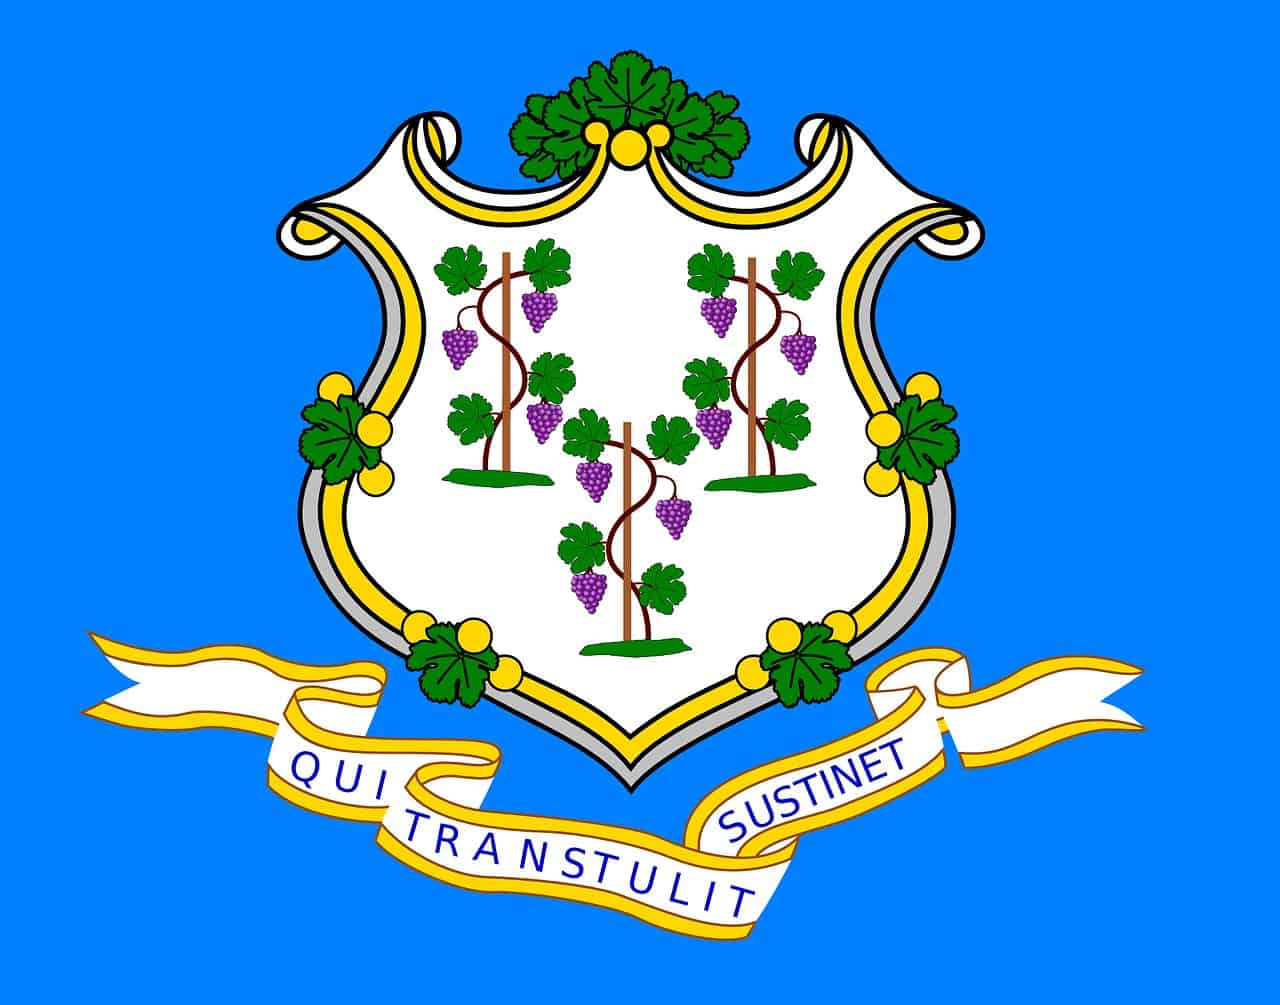 Marijuana Laws in Connecticut